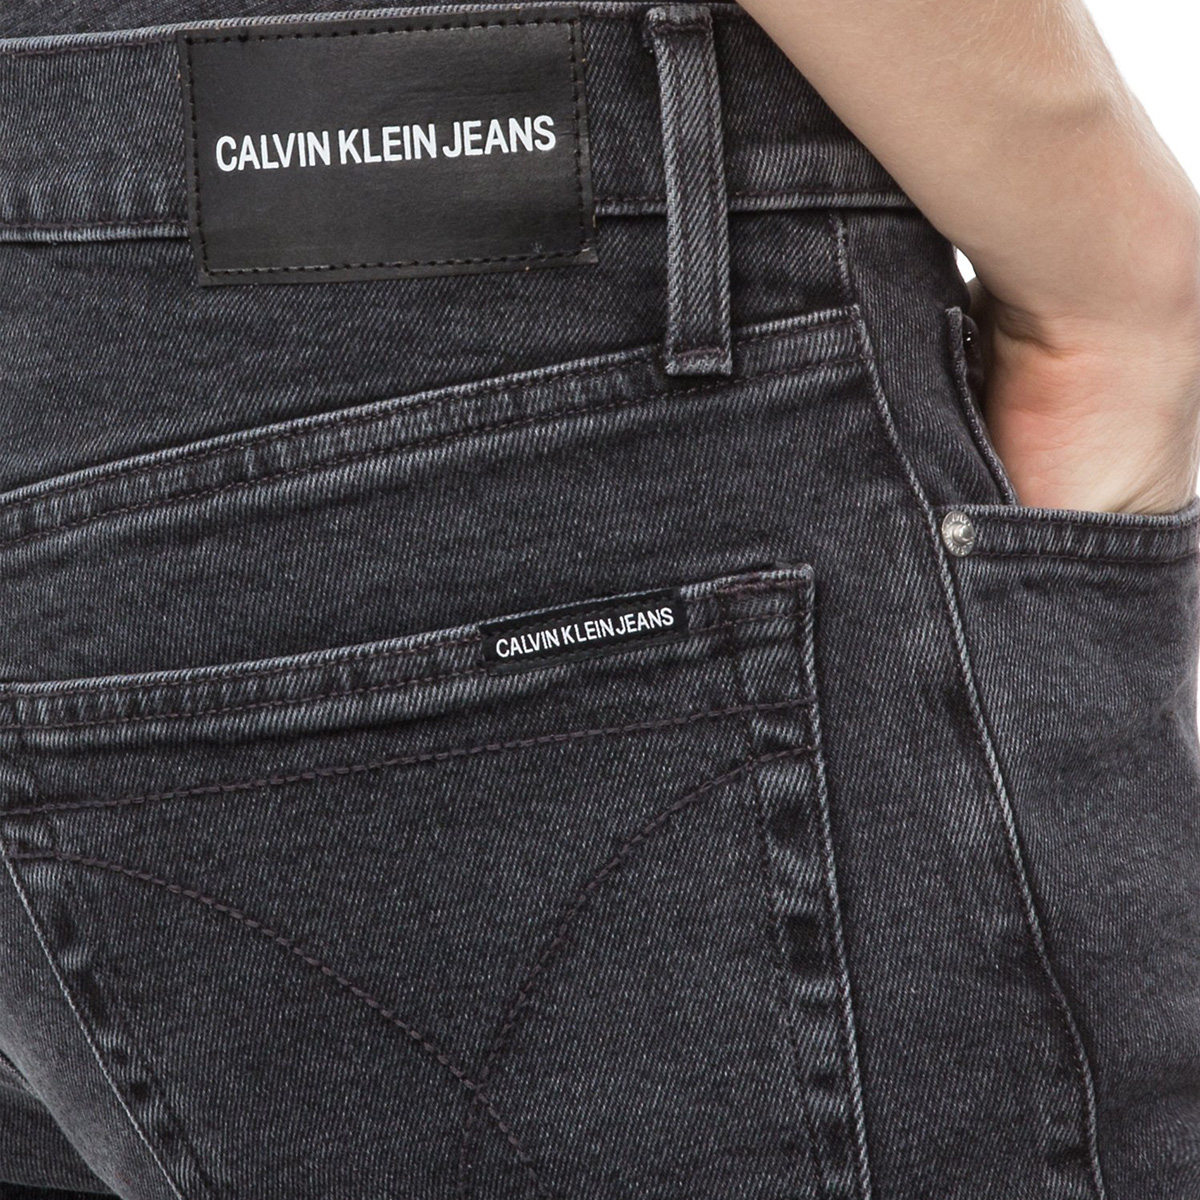 Xưởng may quần jean Calvin Klein